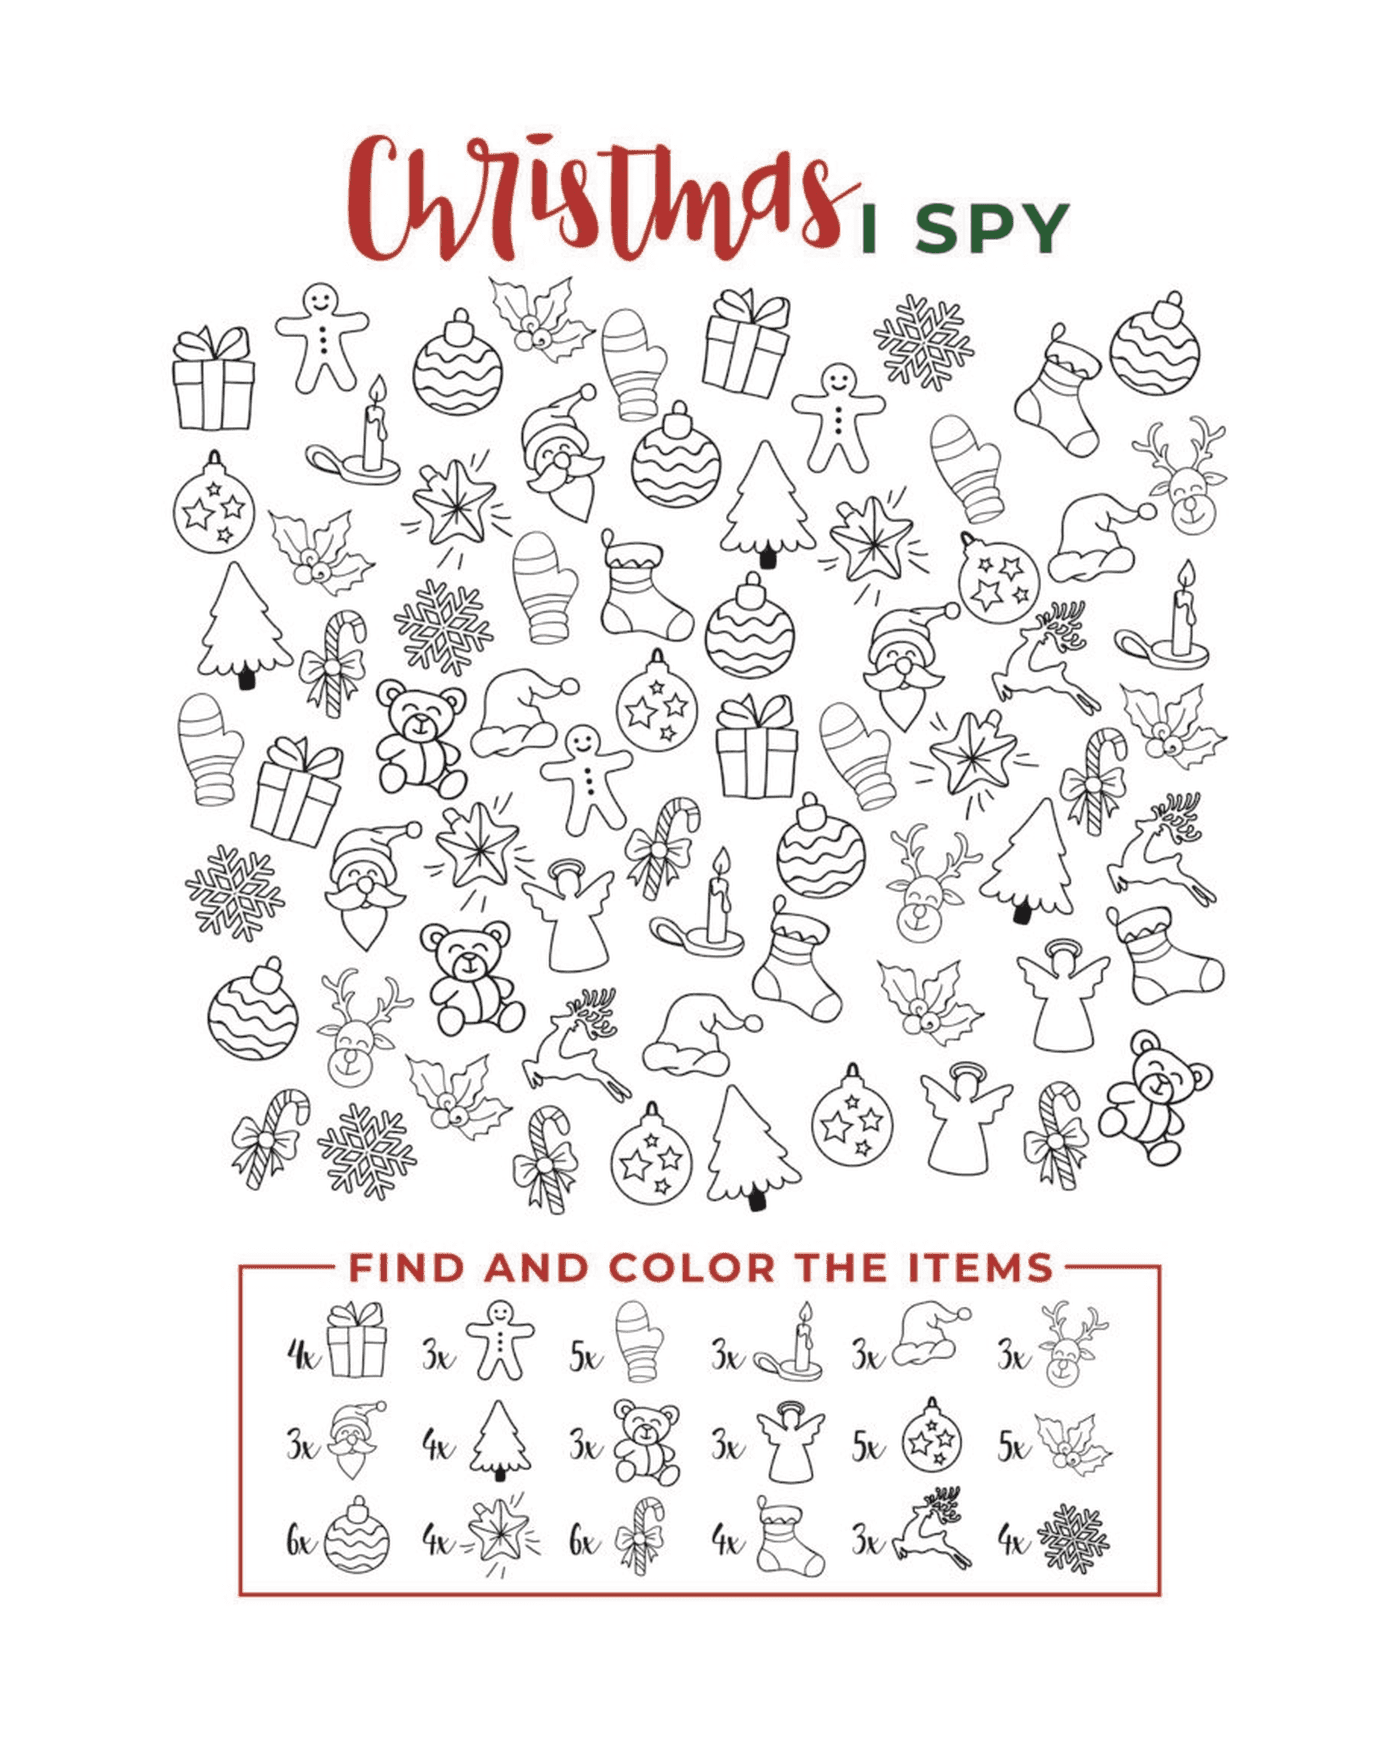  I Spy Christmas Encontrar e colorir os itens 